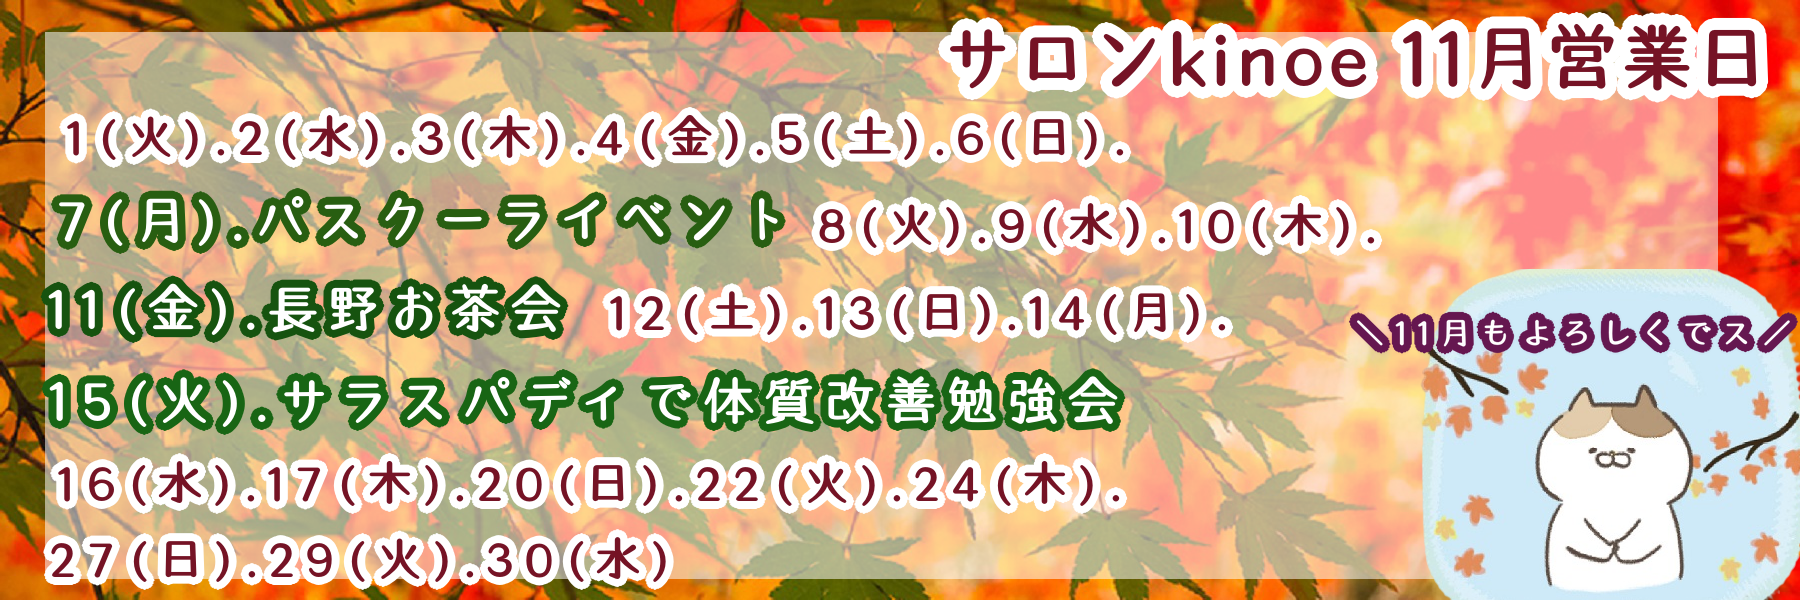 autumn-leaves_000032